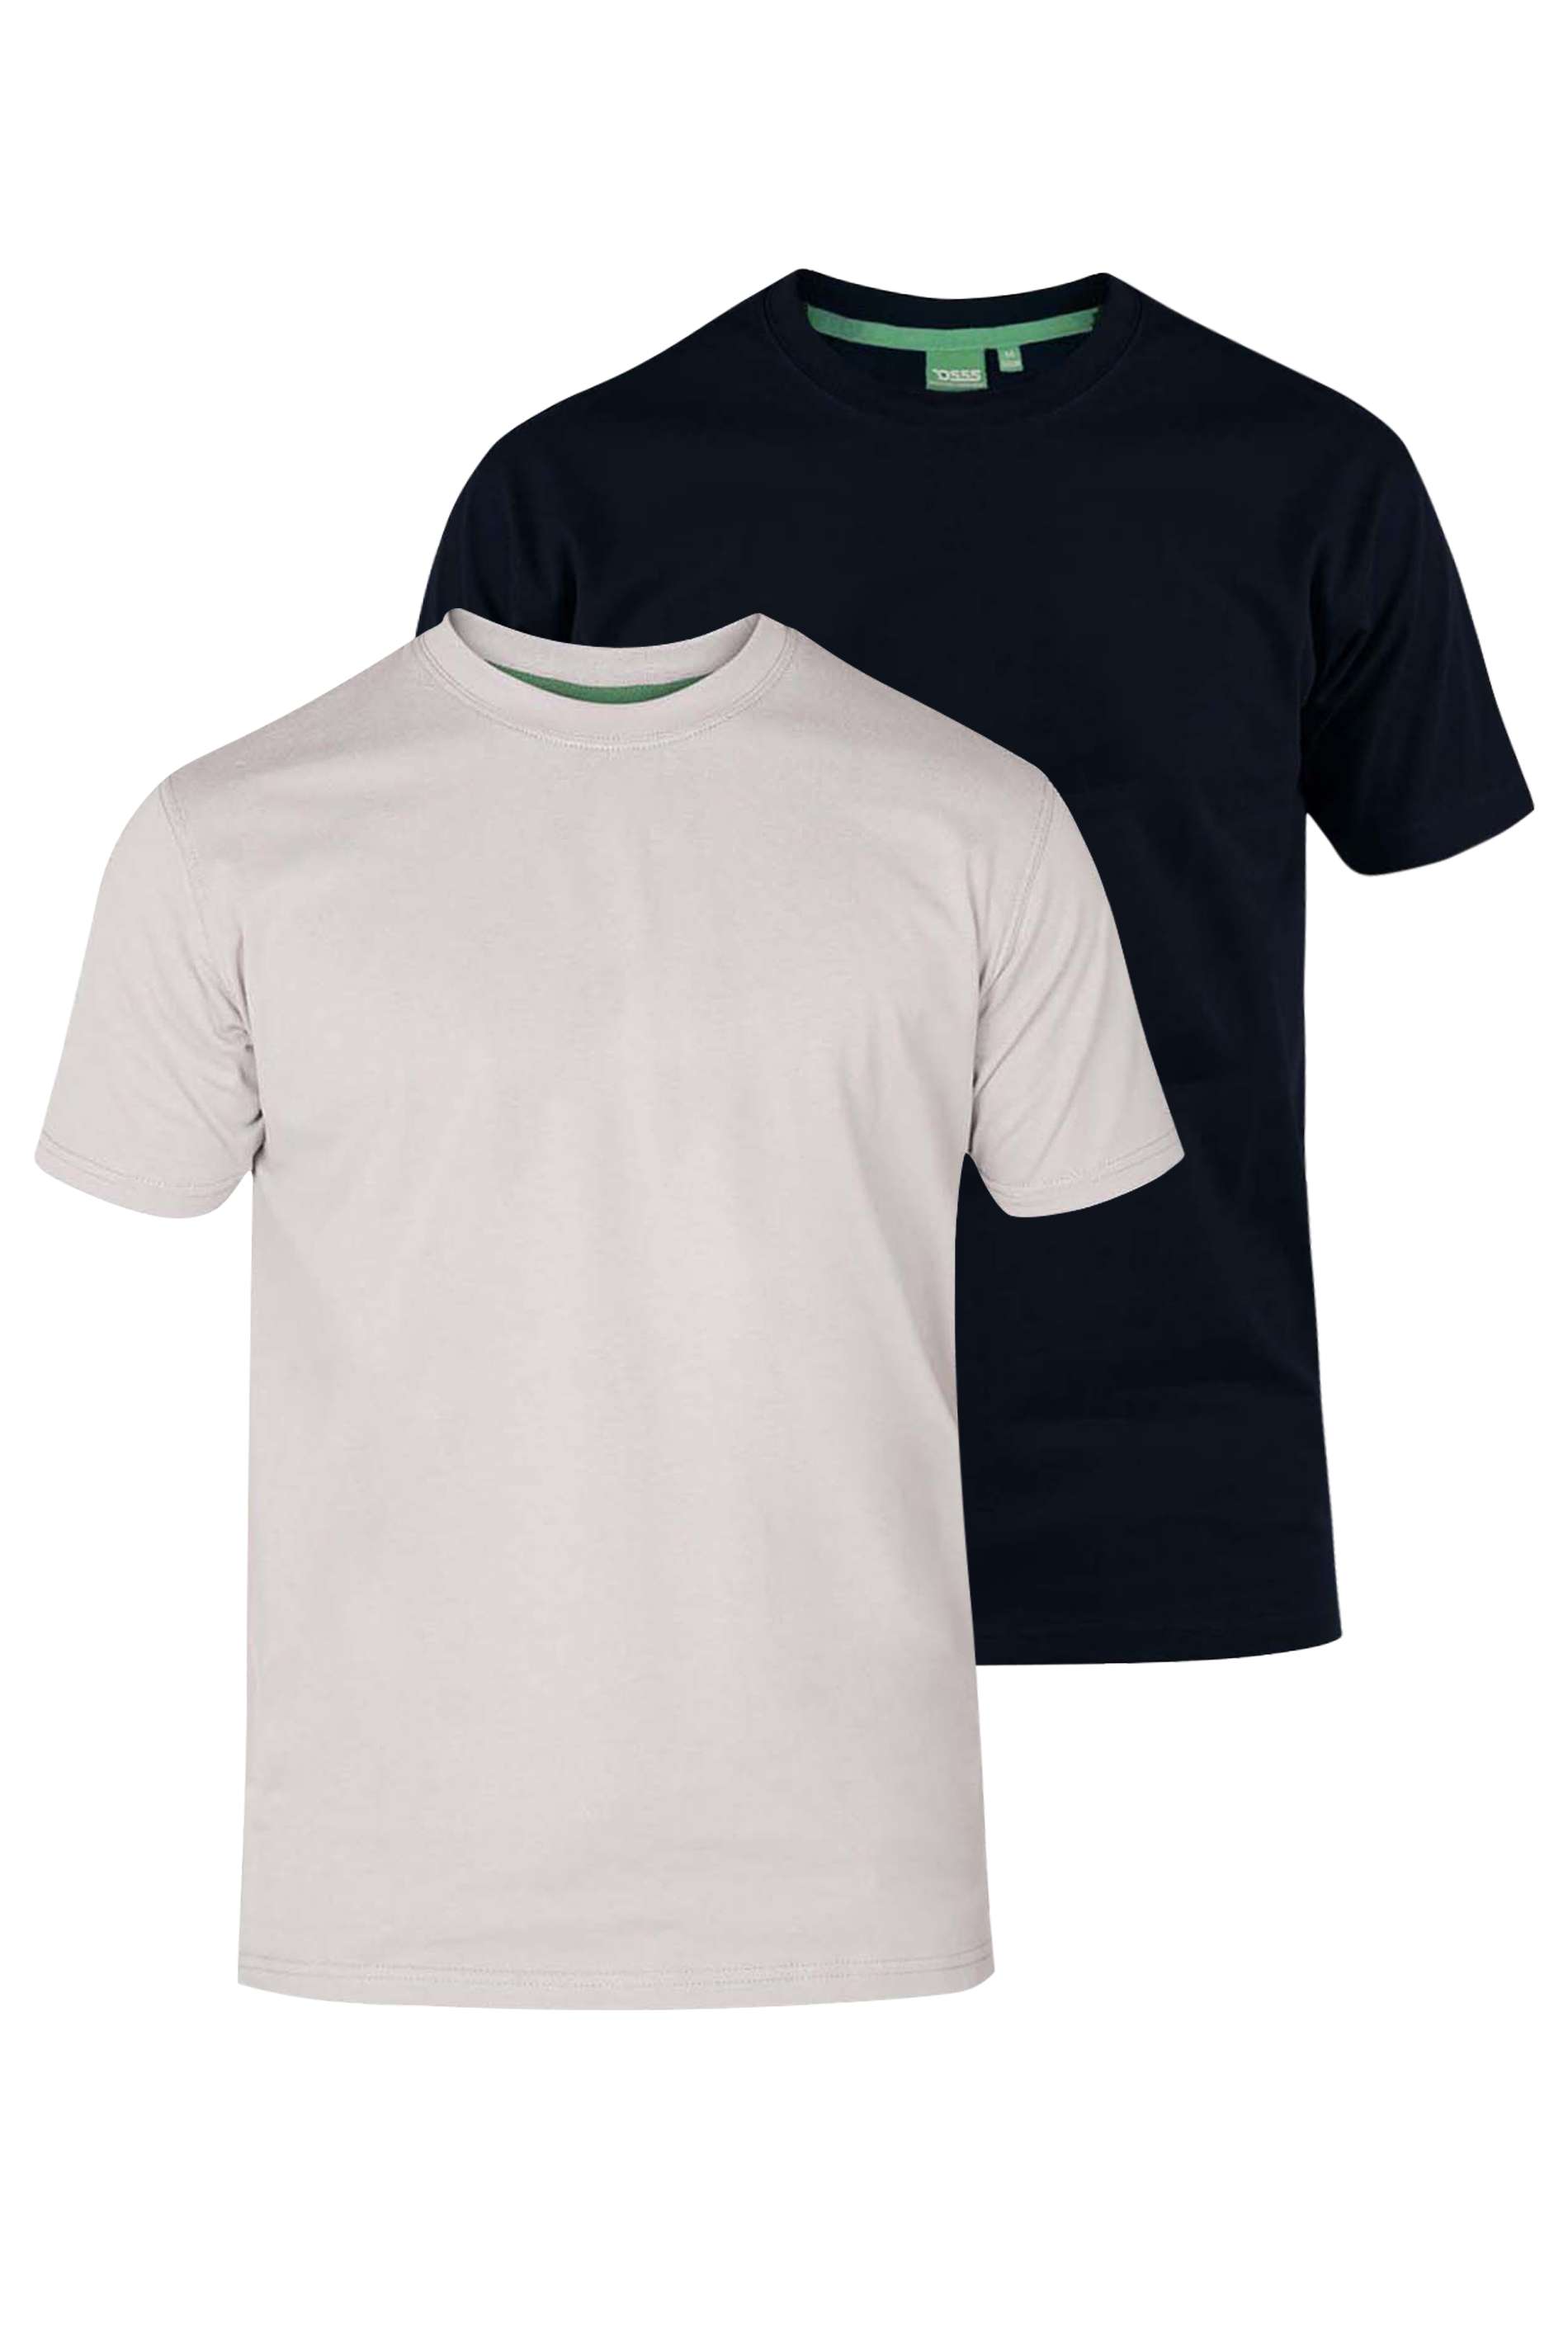 D555 Big & Tall 2 PACK Black & White T-Shirts 1